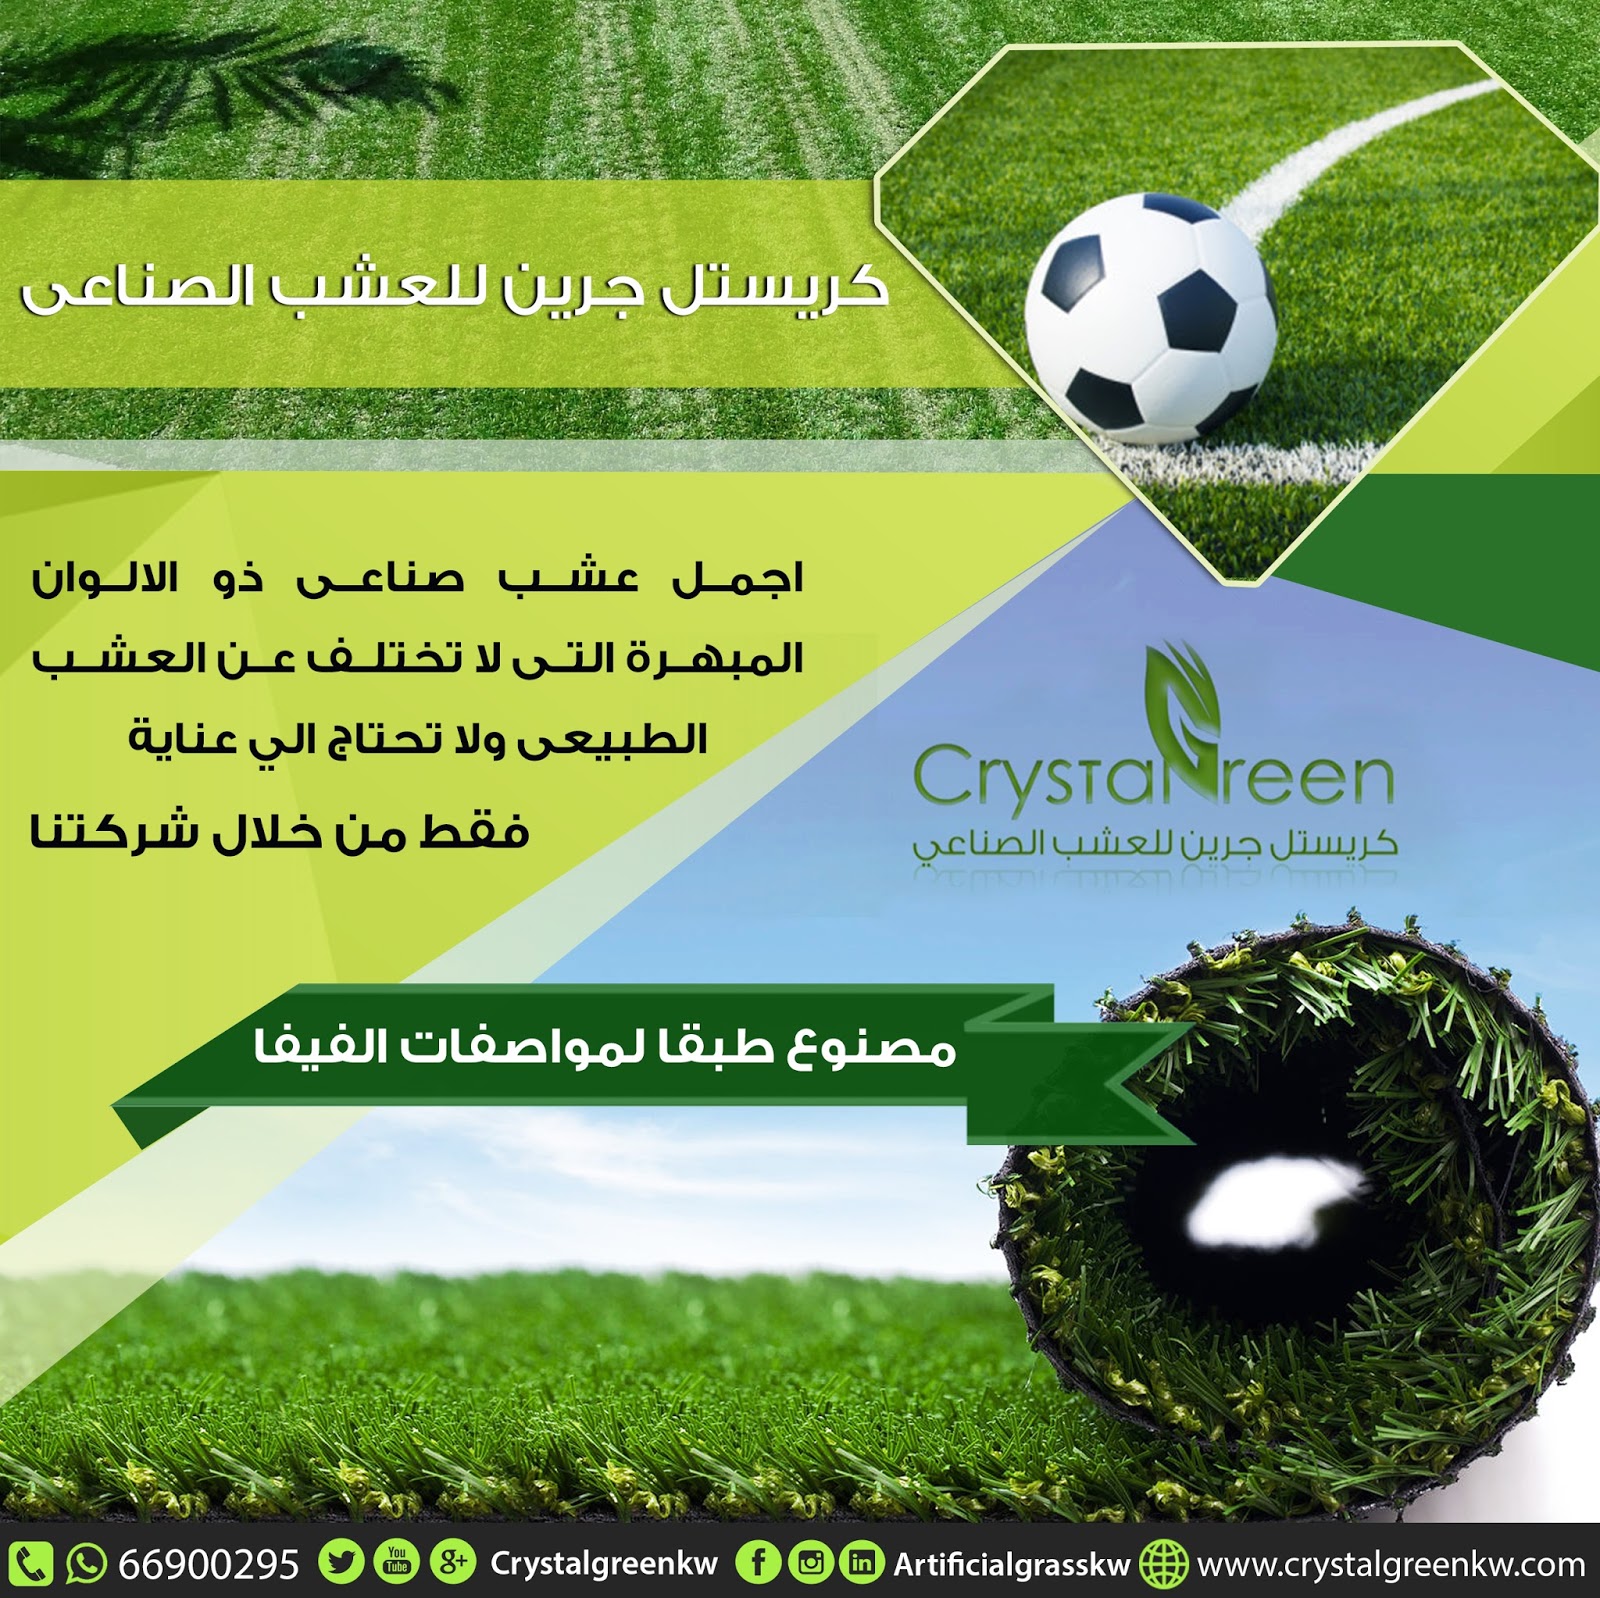 النجيلة الصناعية|مميزات النجيلة الصناعية في تزيين الحدائق والملاعب الرياضية - كريستل 1